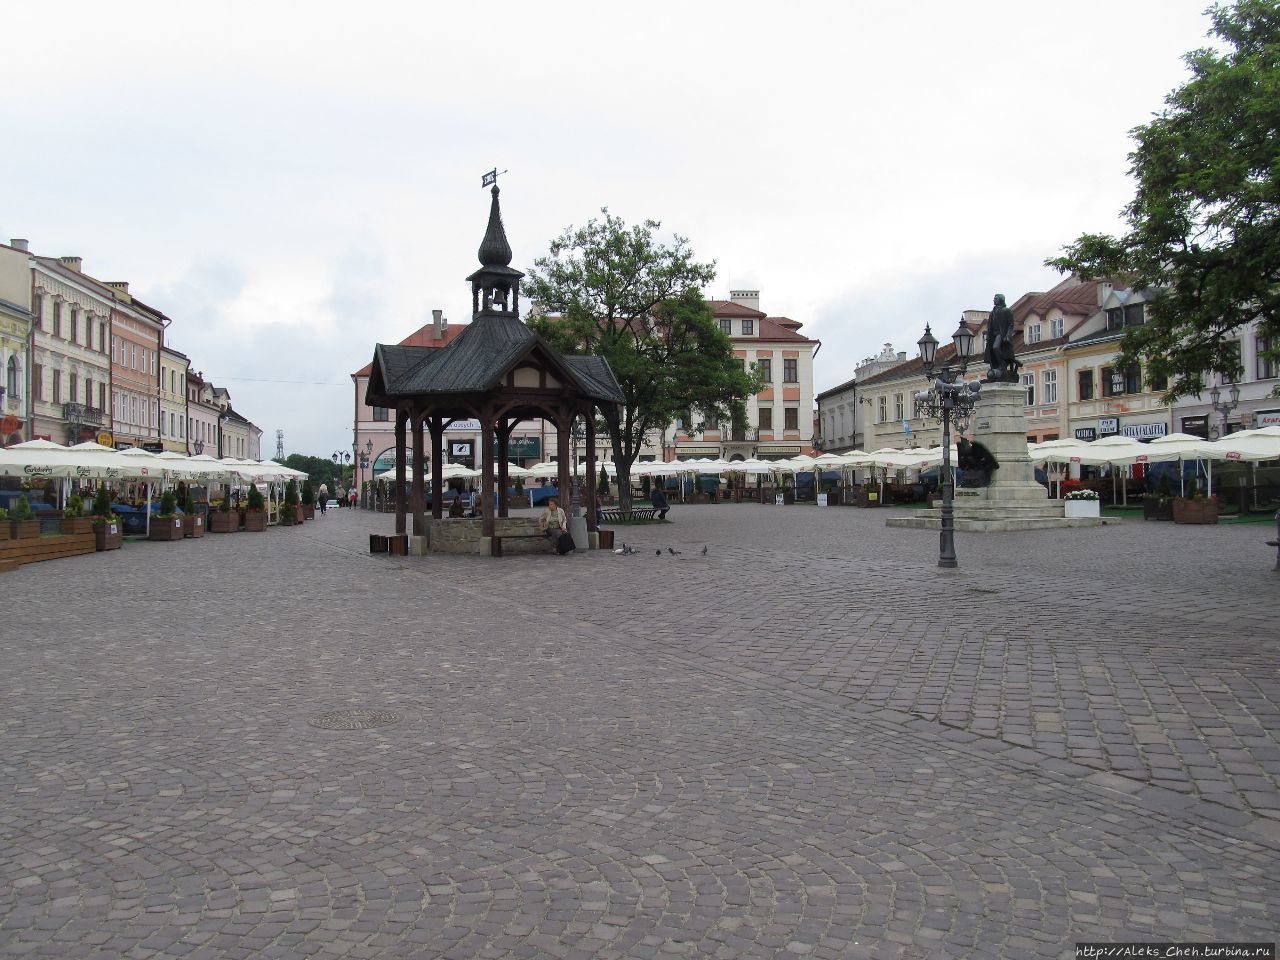 Колодец на Рыночной площади Жешув, Польша